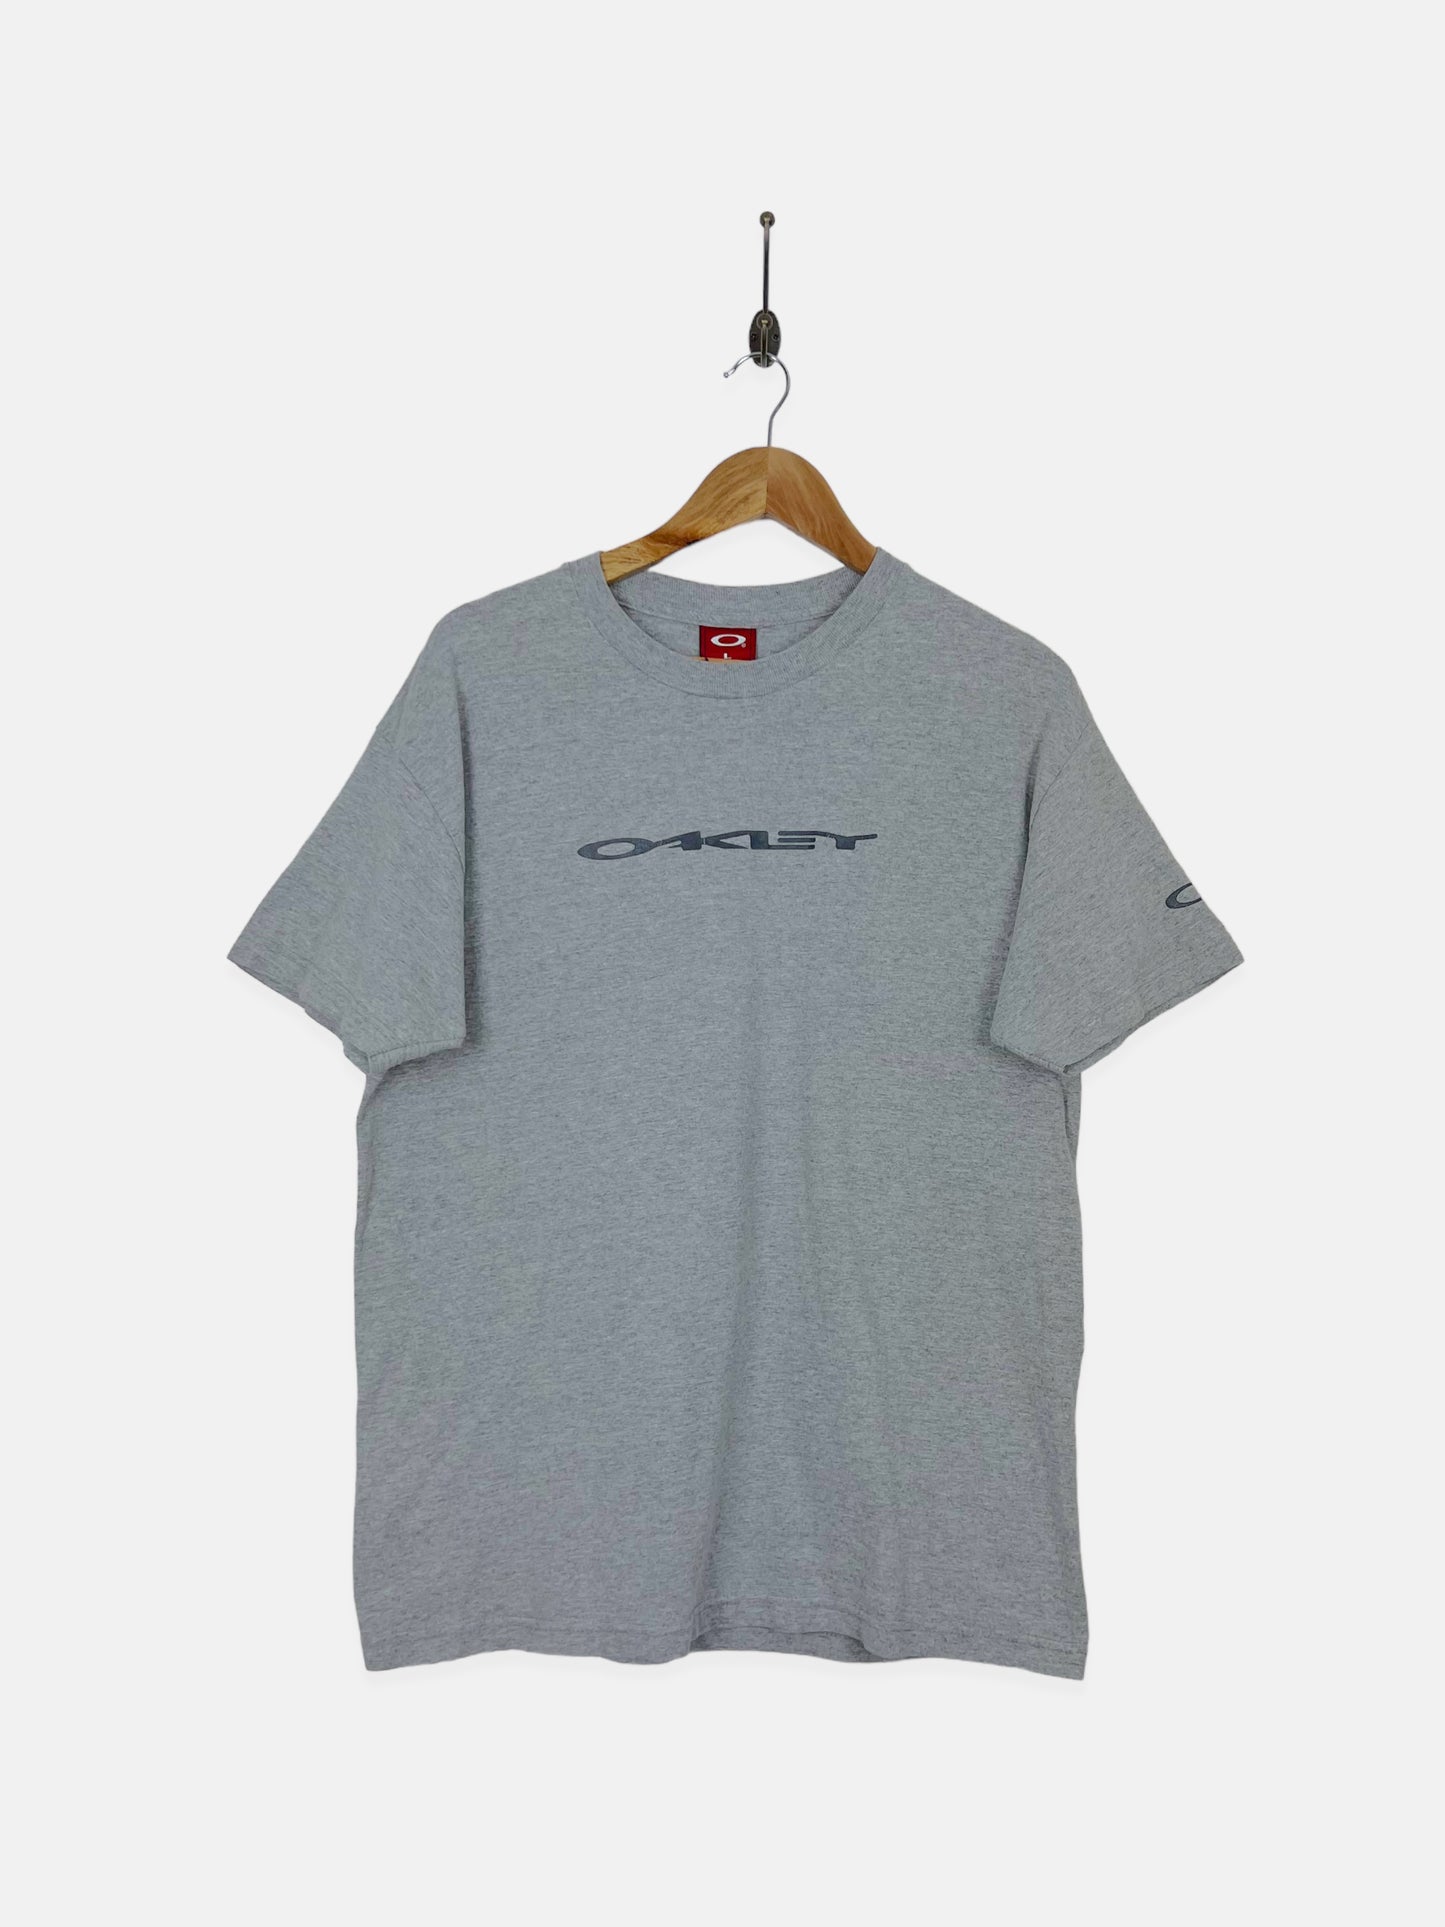 90's Oakley Vintage T-Shirt Size M-L